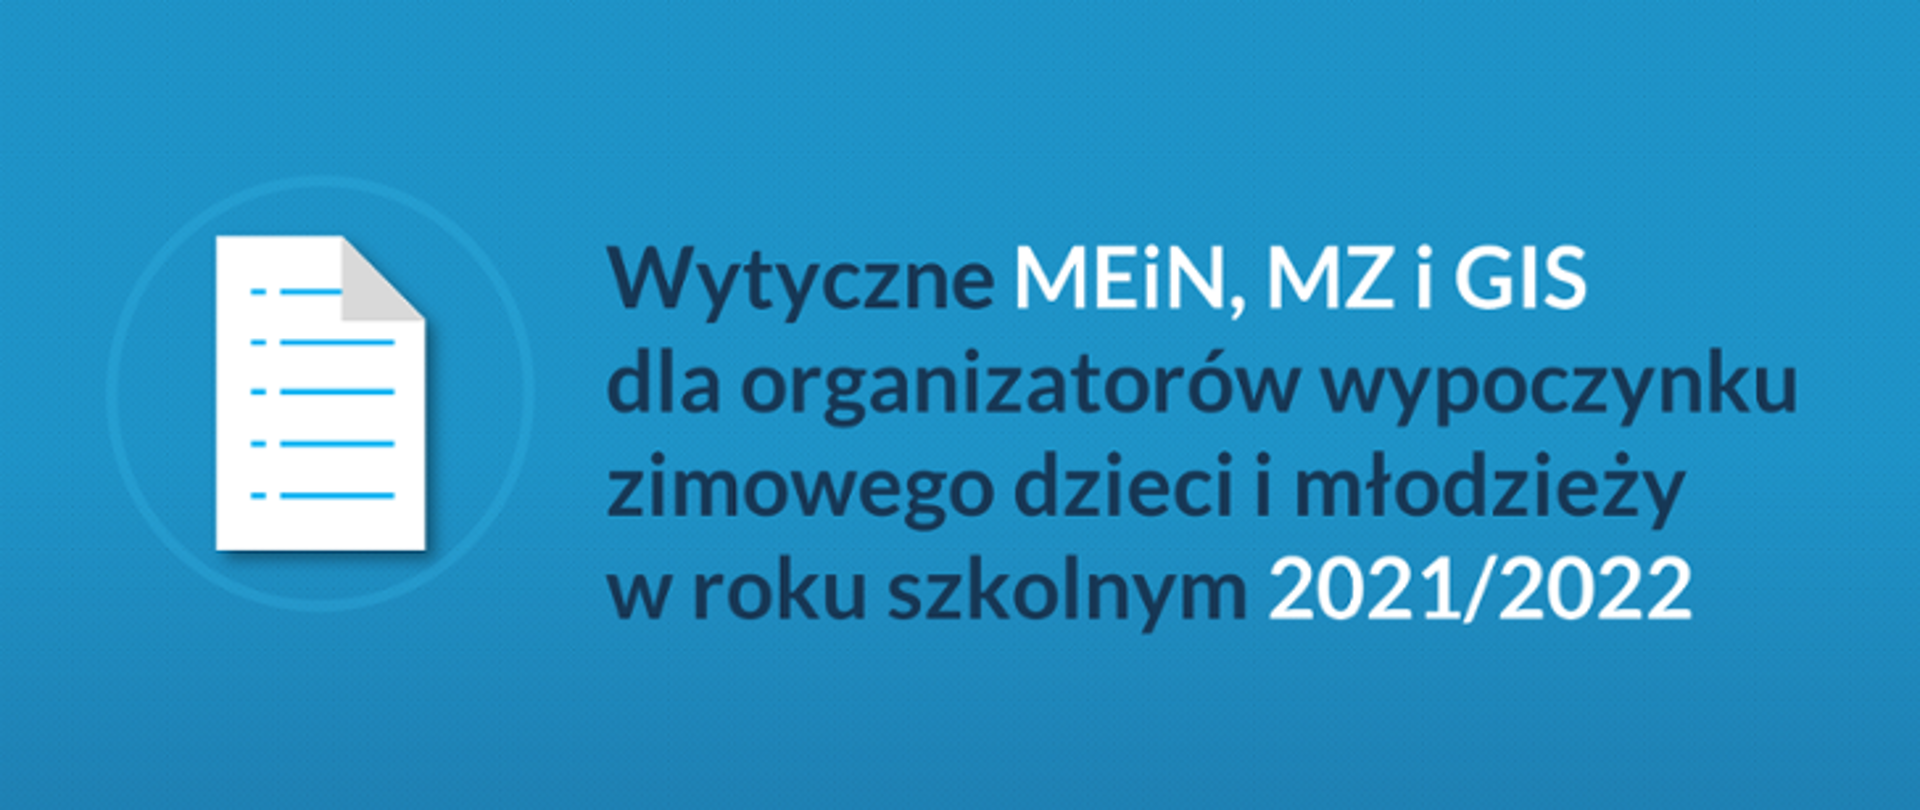 Napis : wytyczne MEiN, MZ i GIS dla organizatorów wypoczynku zimowego dzieci i młodzieży w roku szkolnym 2021/2022